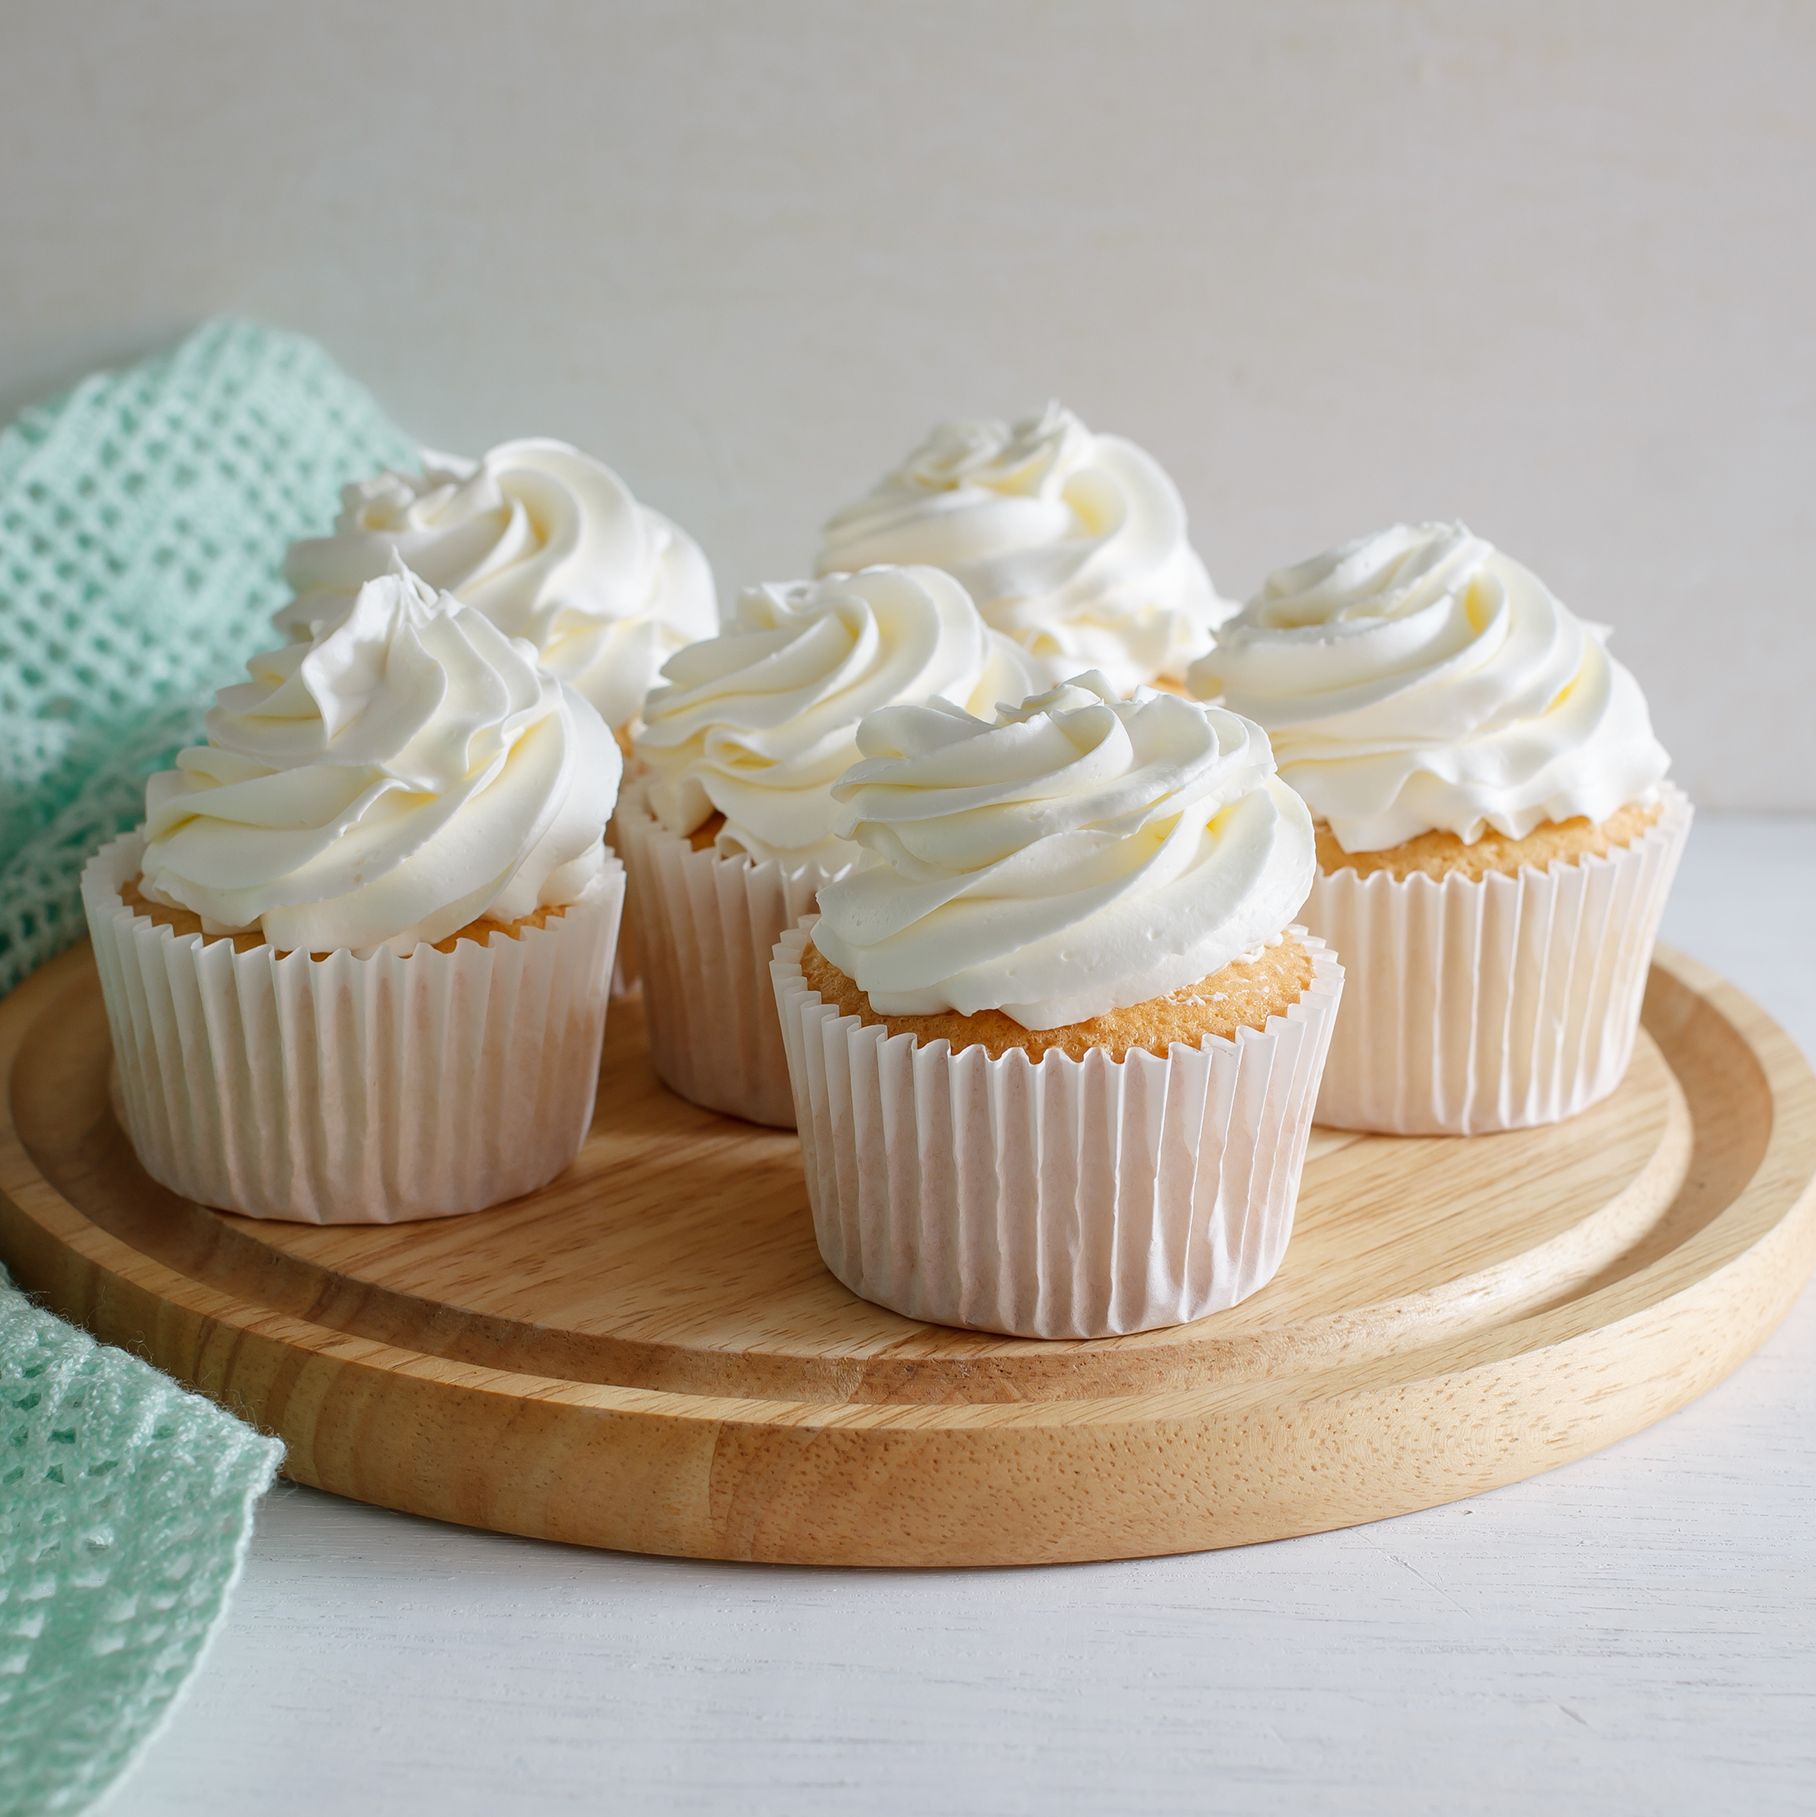 Cupcakes recipe - BBC Food